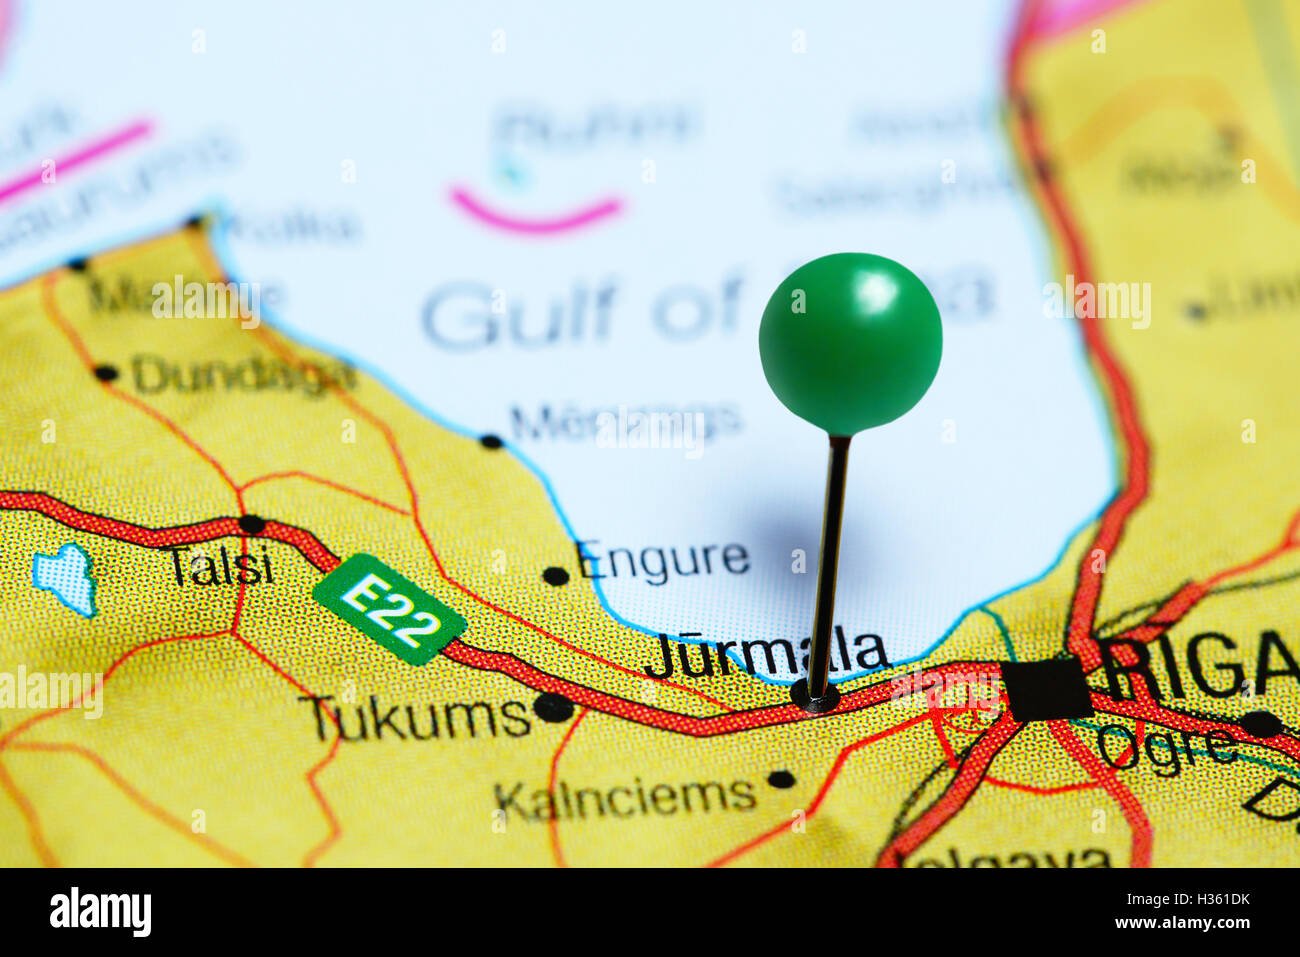 Jurmala pinned on a map of Latvia Stock Photo